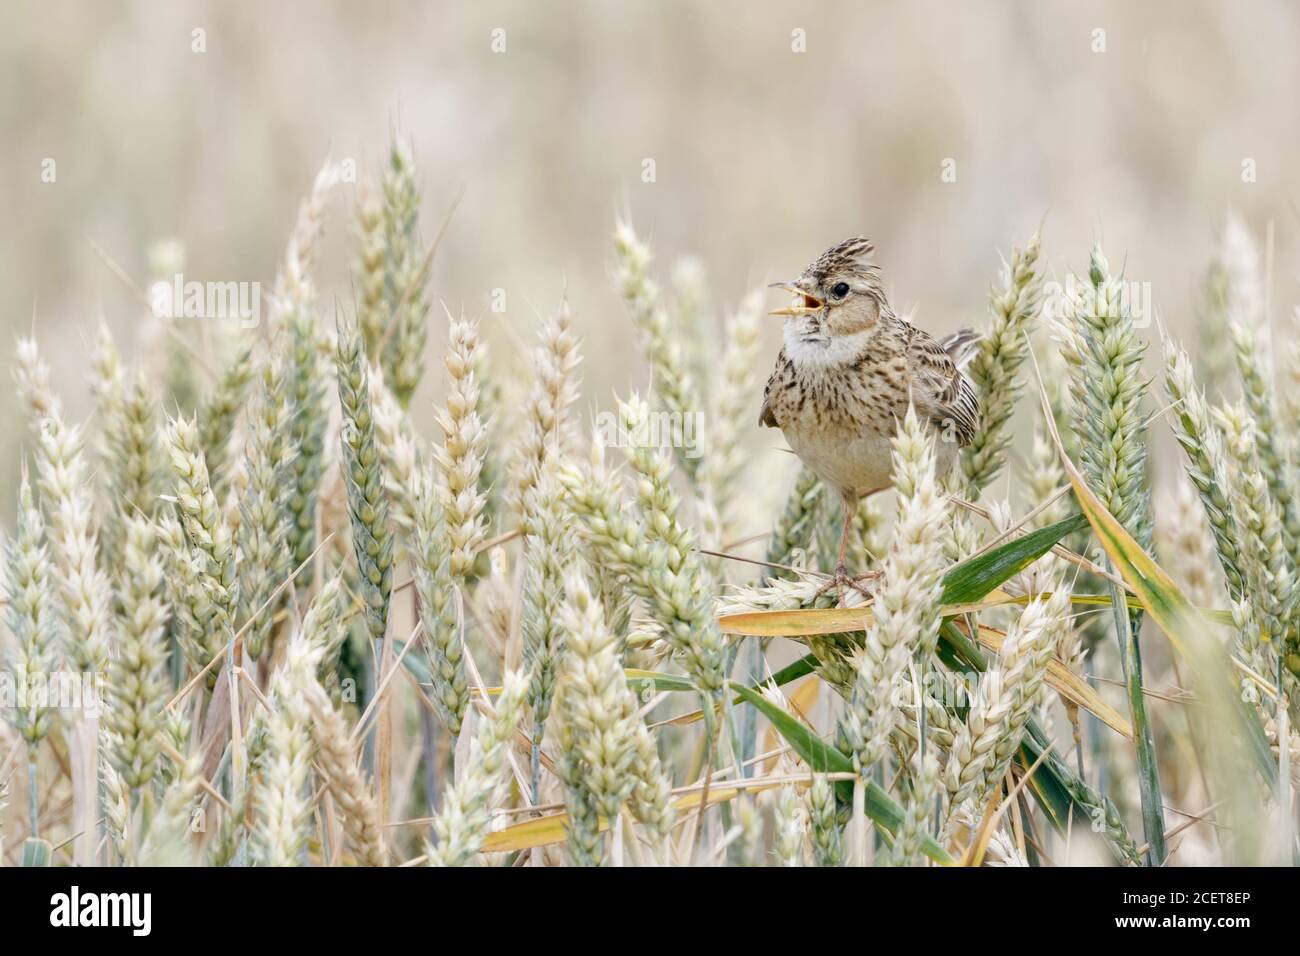 Skylark ( Alauda arvensis ) chantant dans un champ de blé, perchée sur des cultures de blé, crête élevée, oiseau de terre ouverte typique, faune, Europe. Banque D'Images